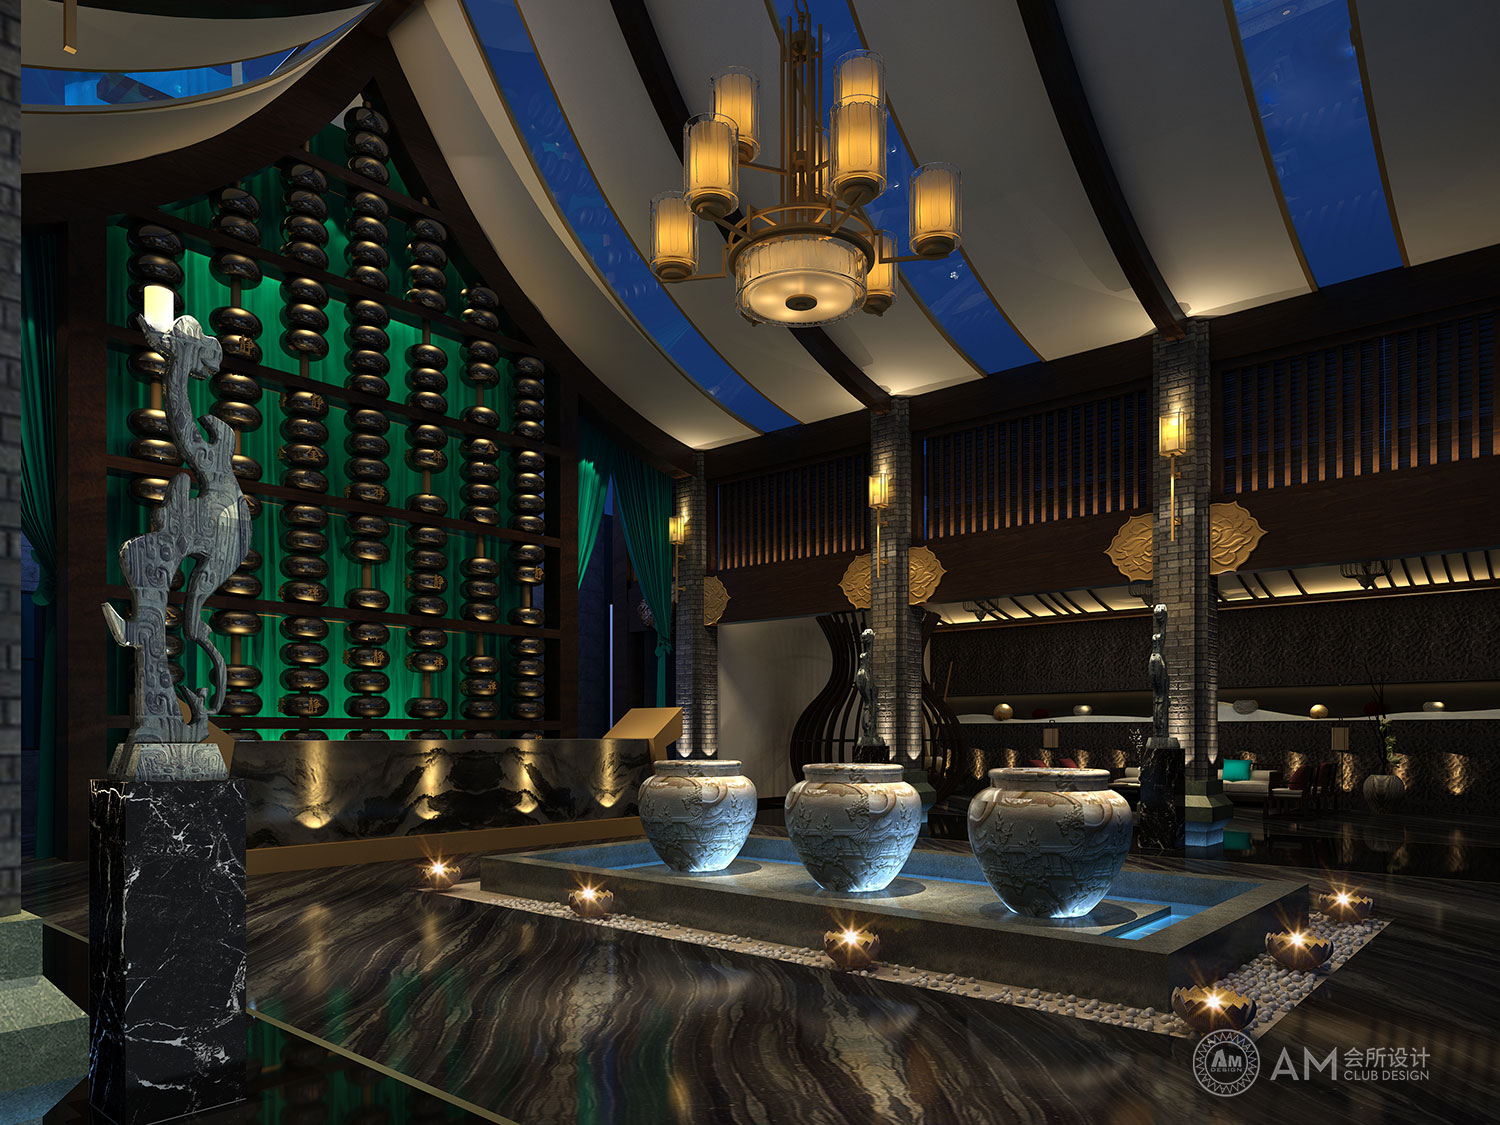 AM DESIGN | Design of qilinhui Top Spa Club Hall